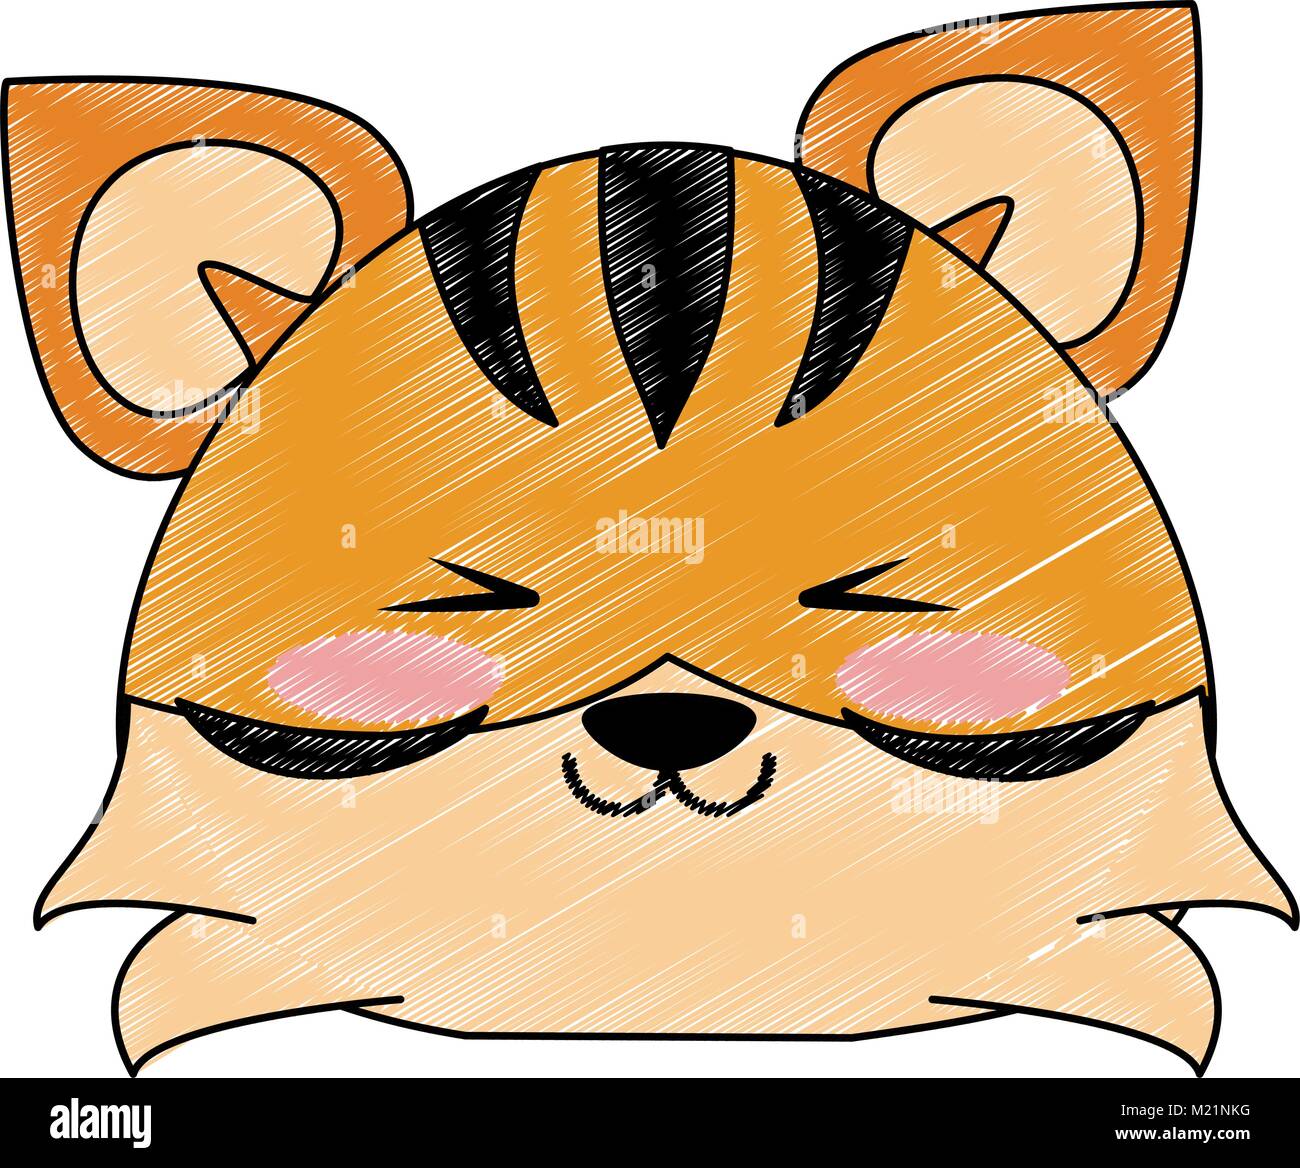 Cute cartoon tiger Illustration de Vecteur